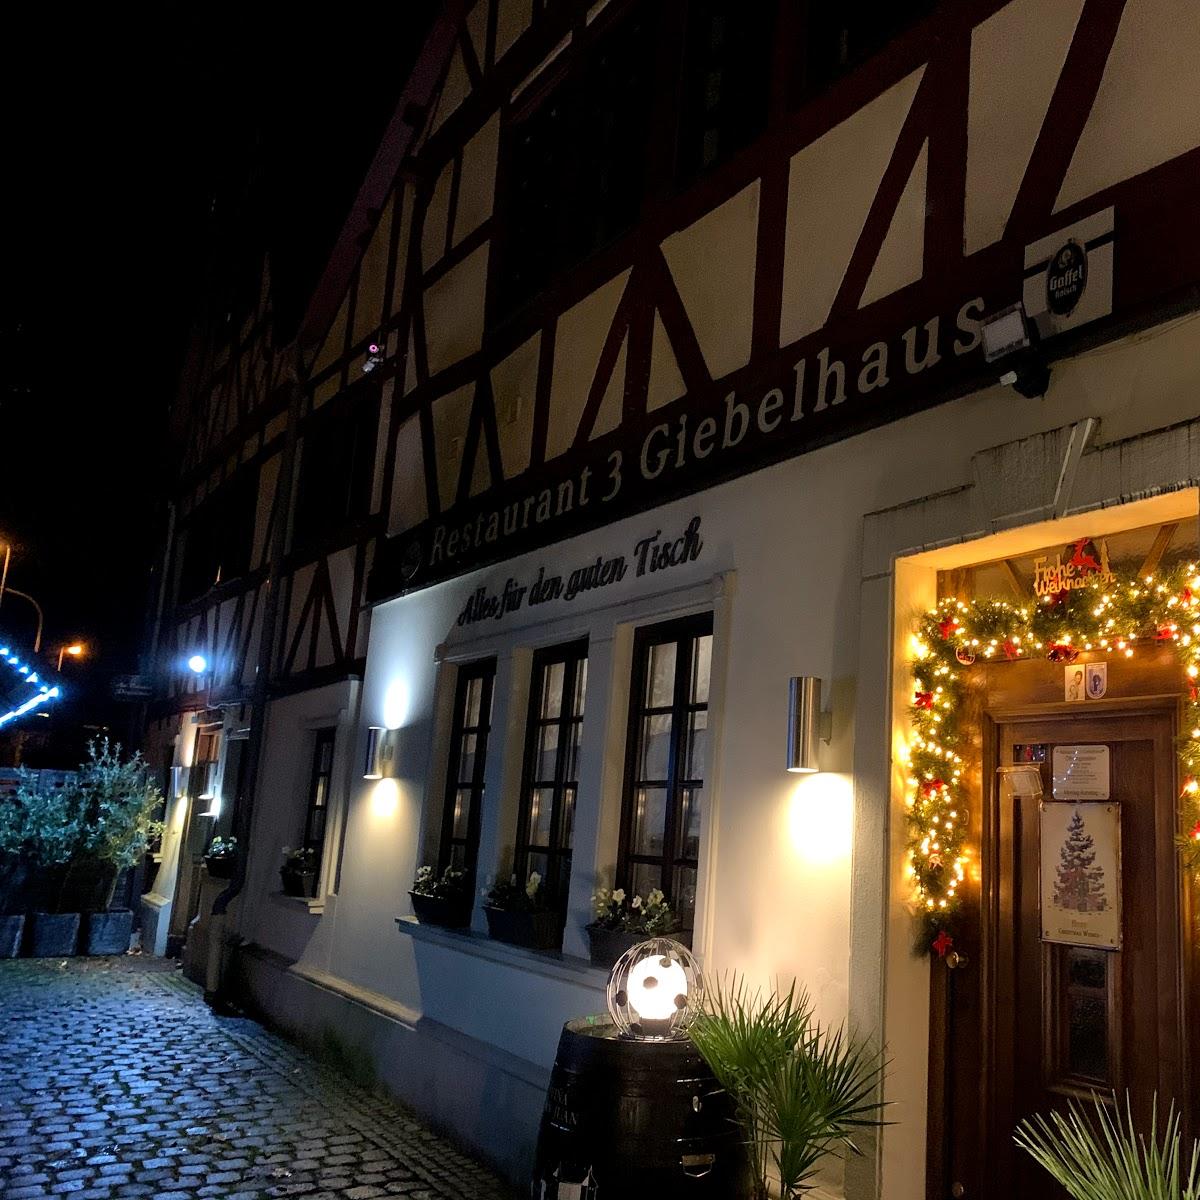 Restaurant "Restaurant 3-Giebelhaus" in  Hennef